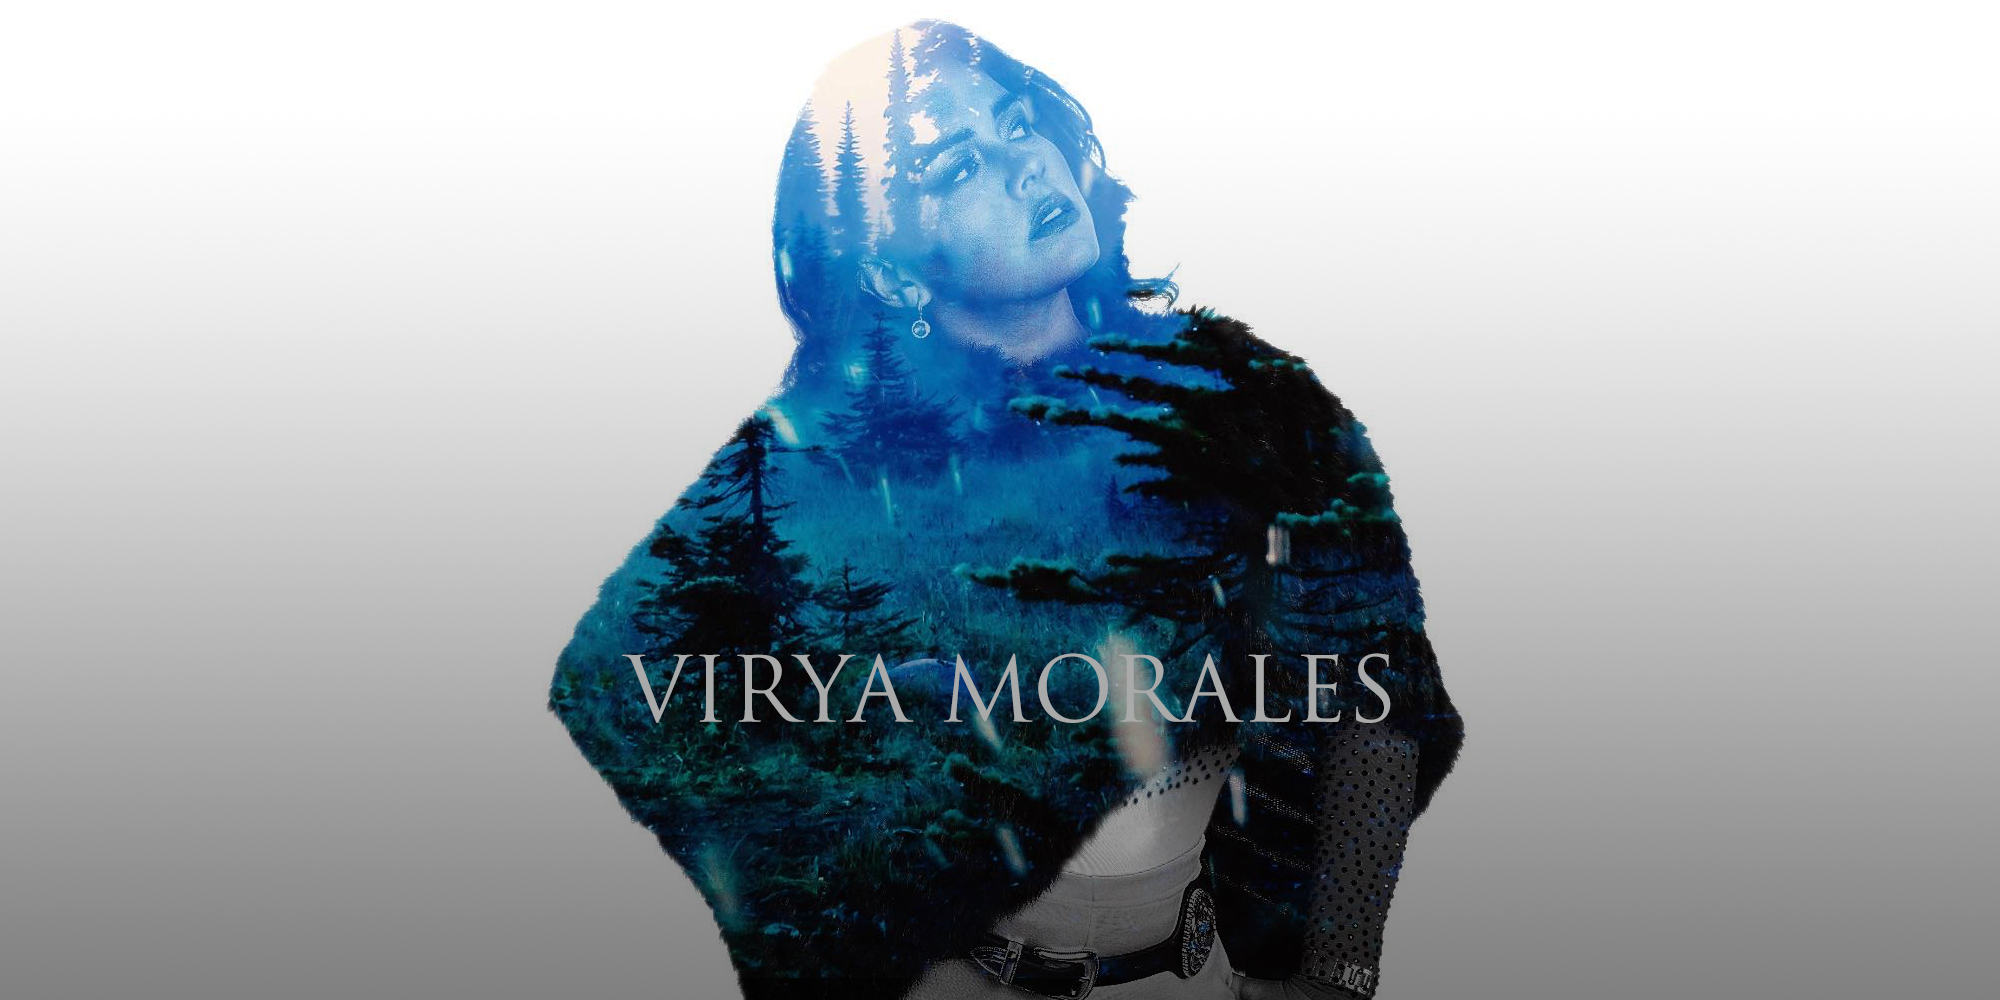 Virya Morales